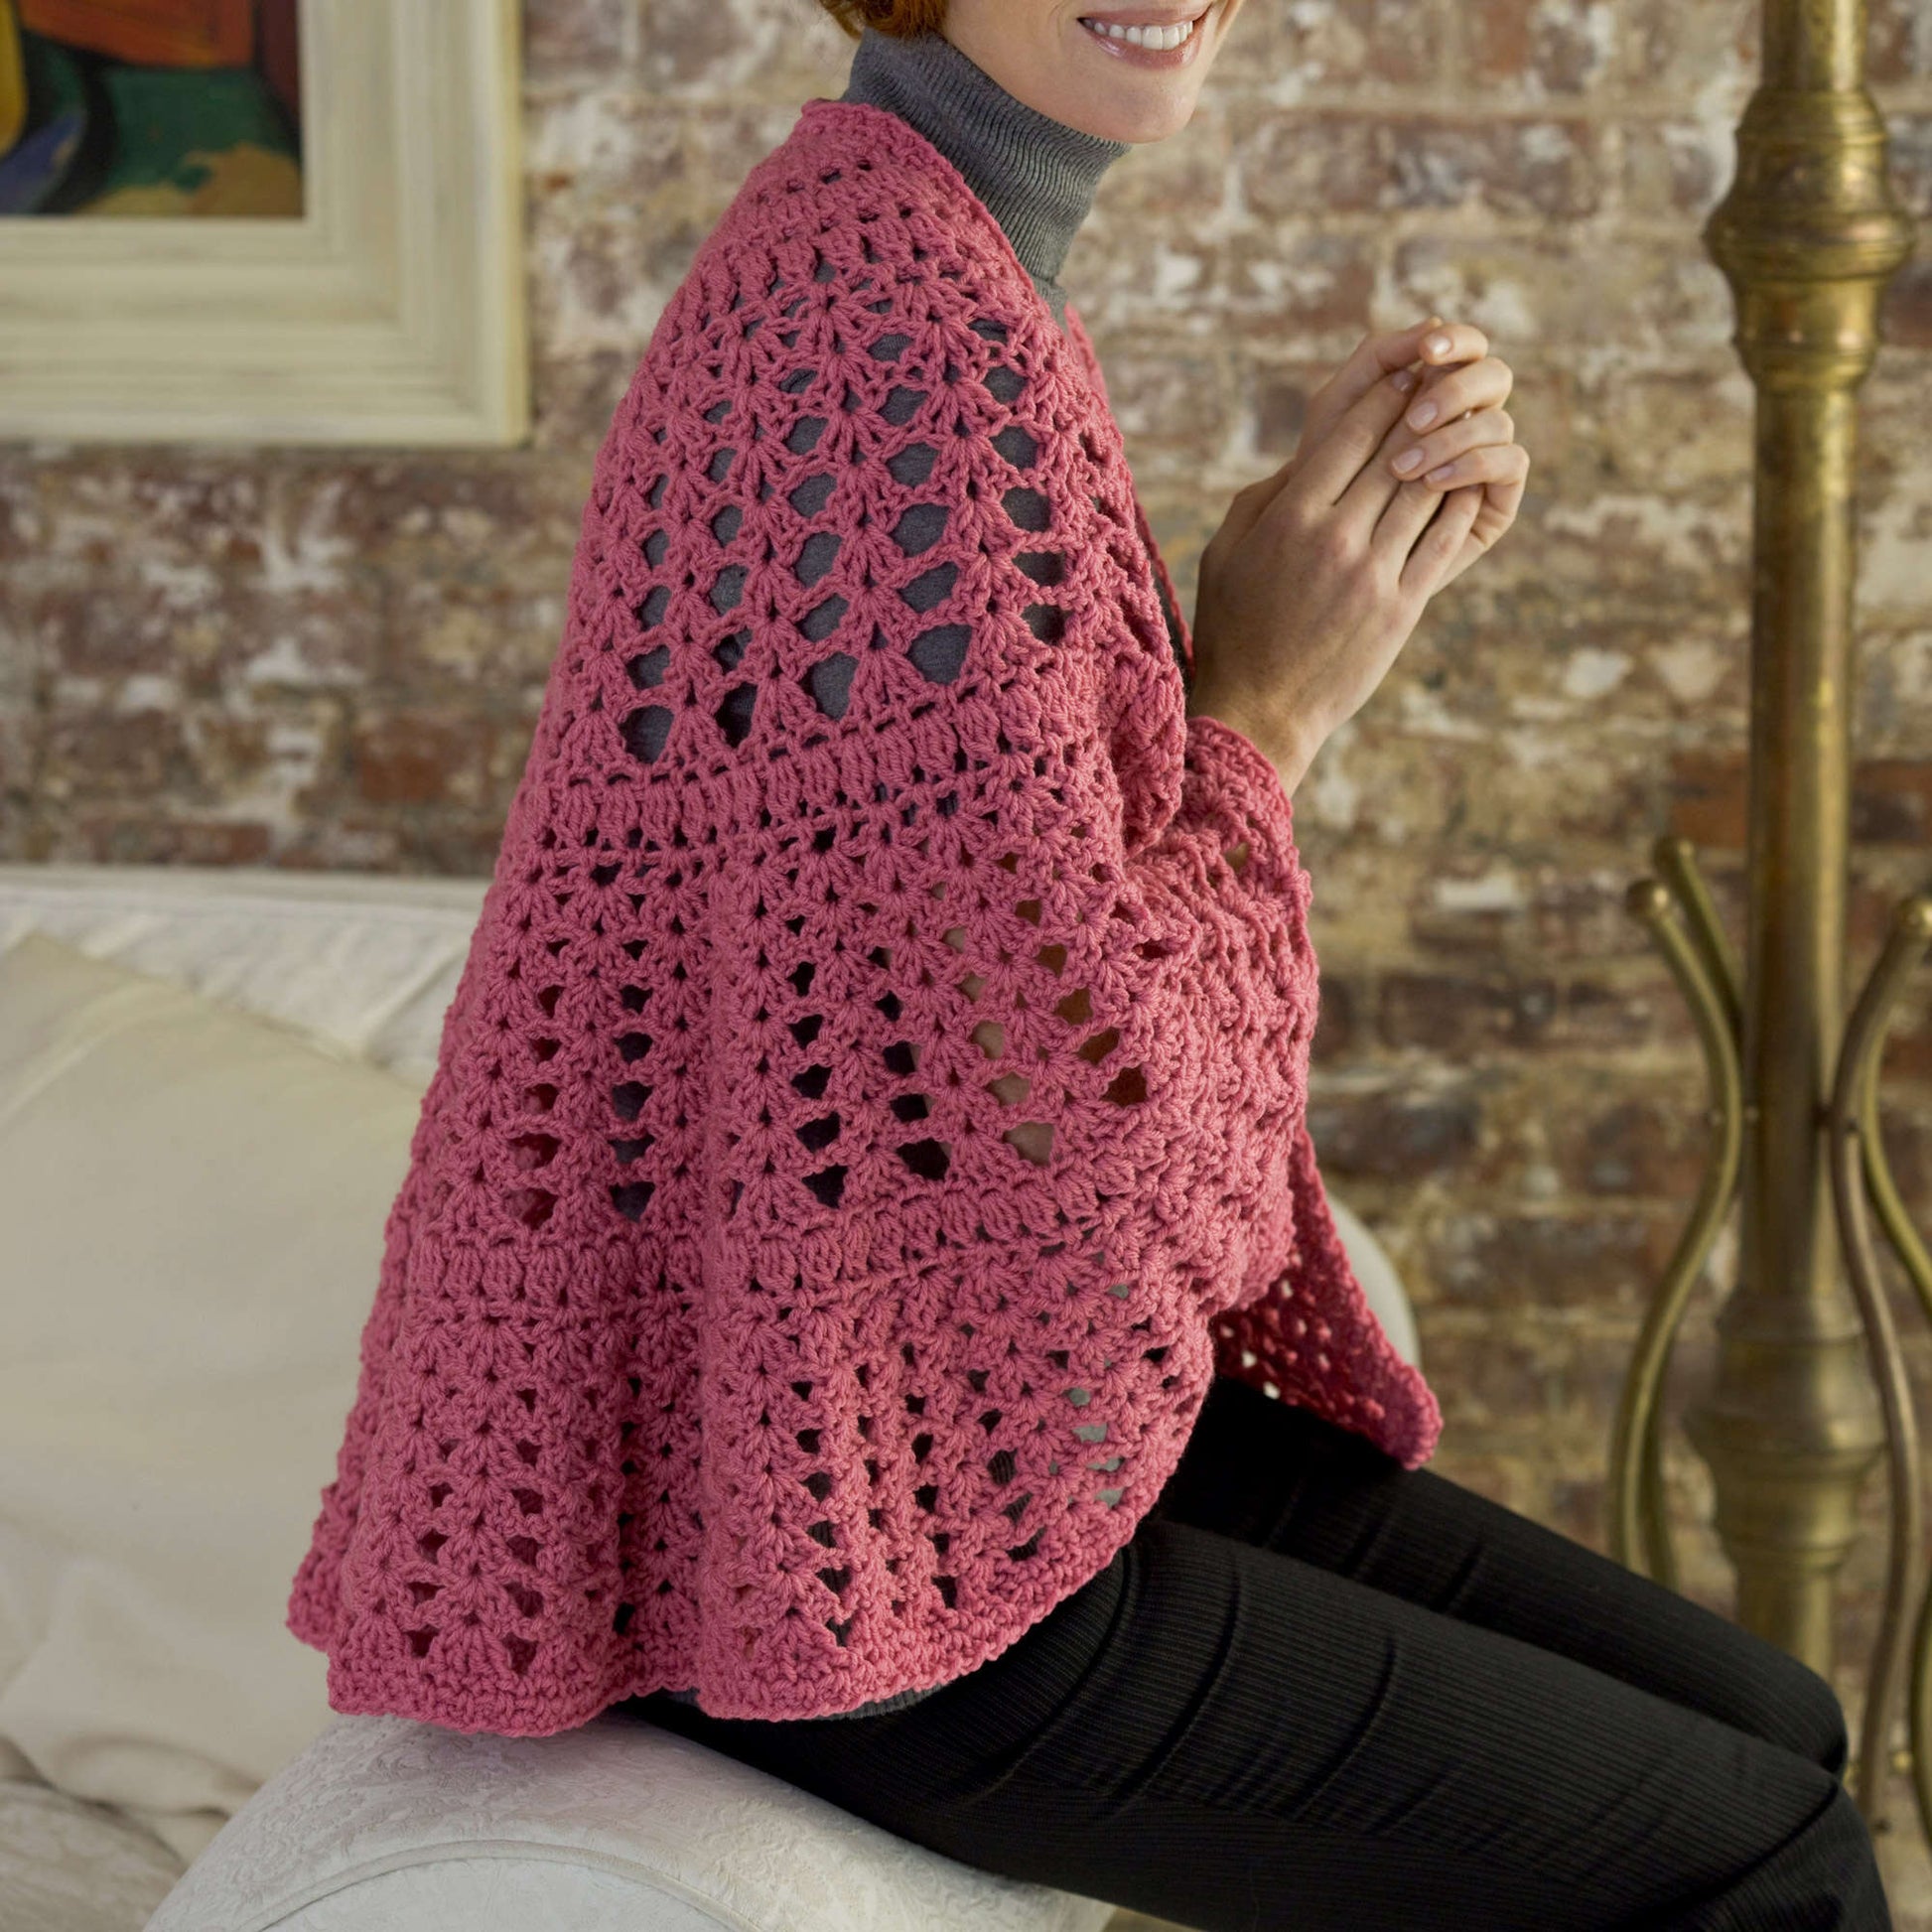 Free Red Heart Crochet Be A Friend Shawl Pattern